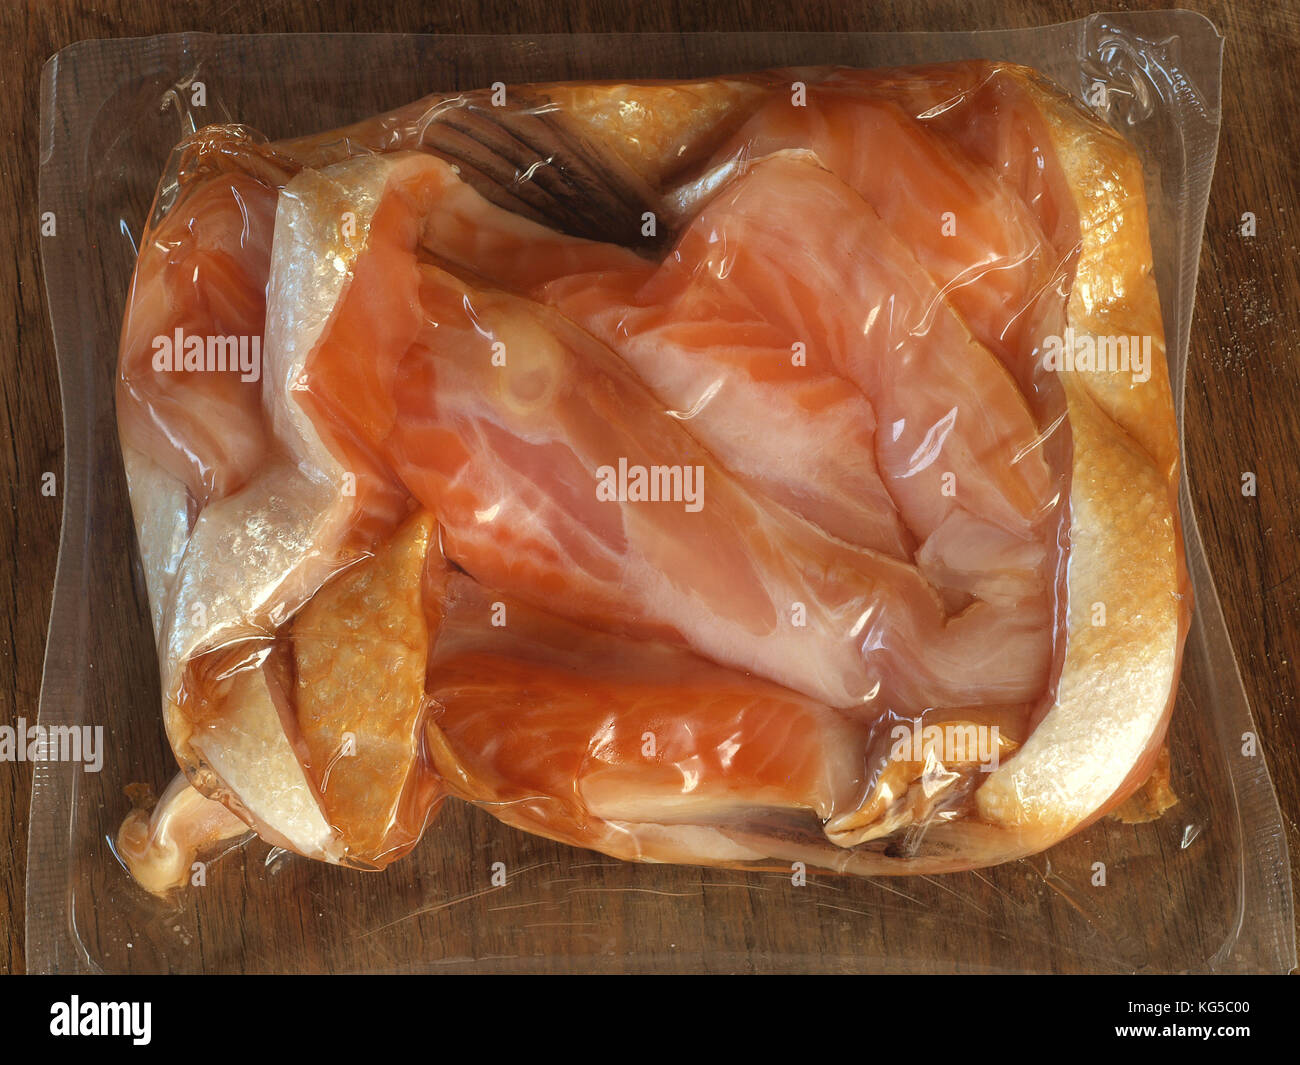 Les ventres de saumon fumé emballé dans un film plastique Banque D'Images